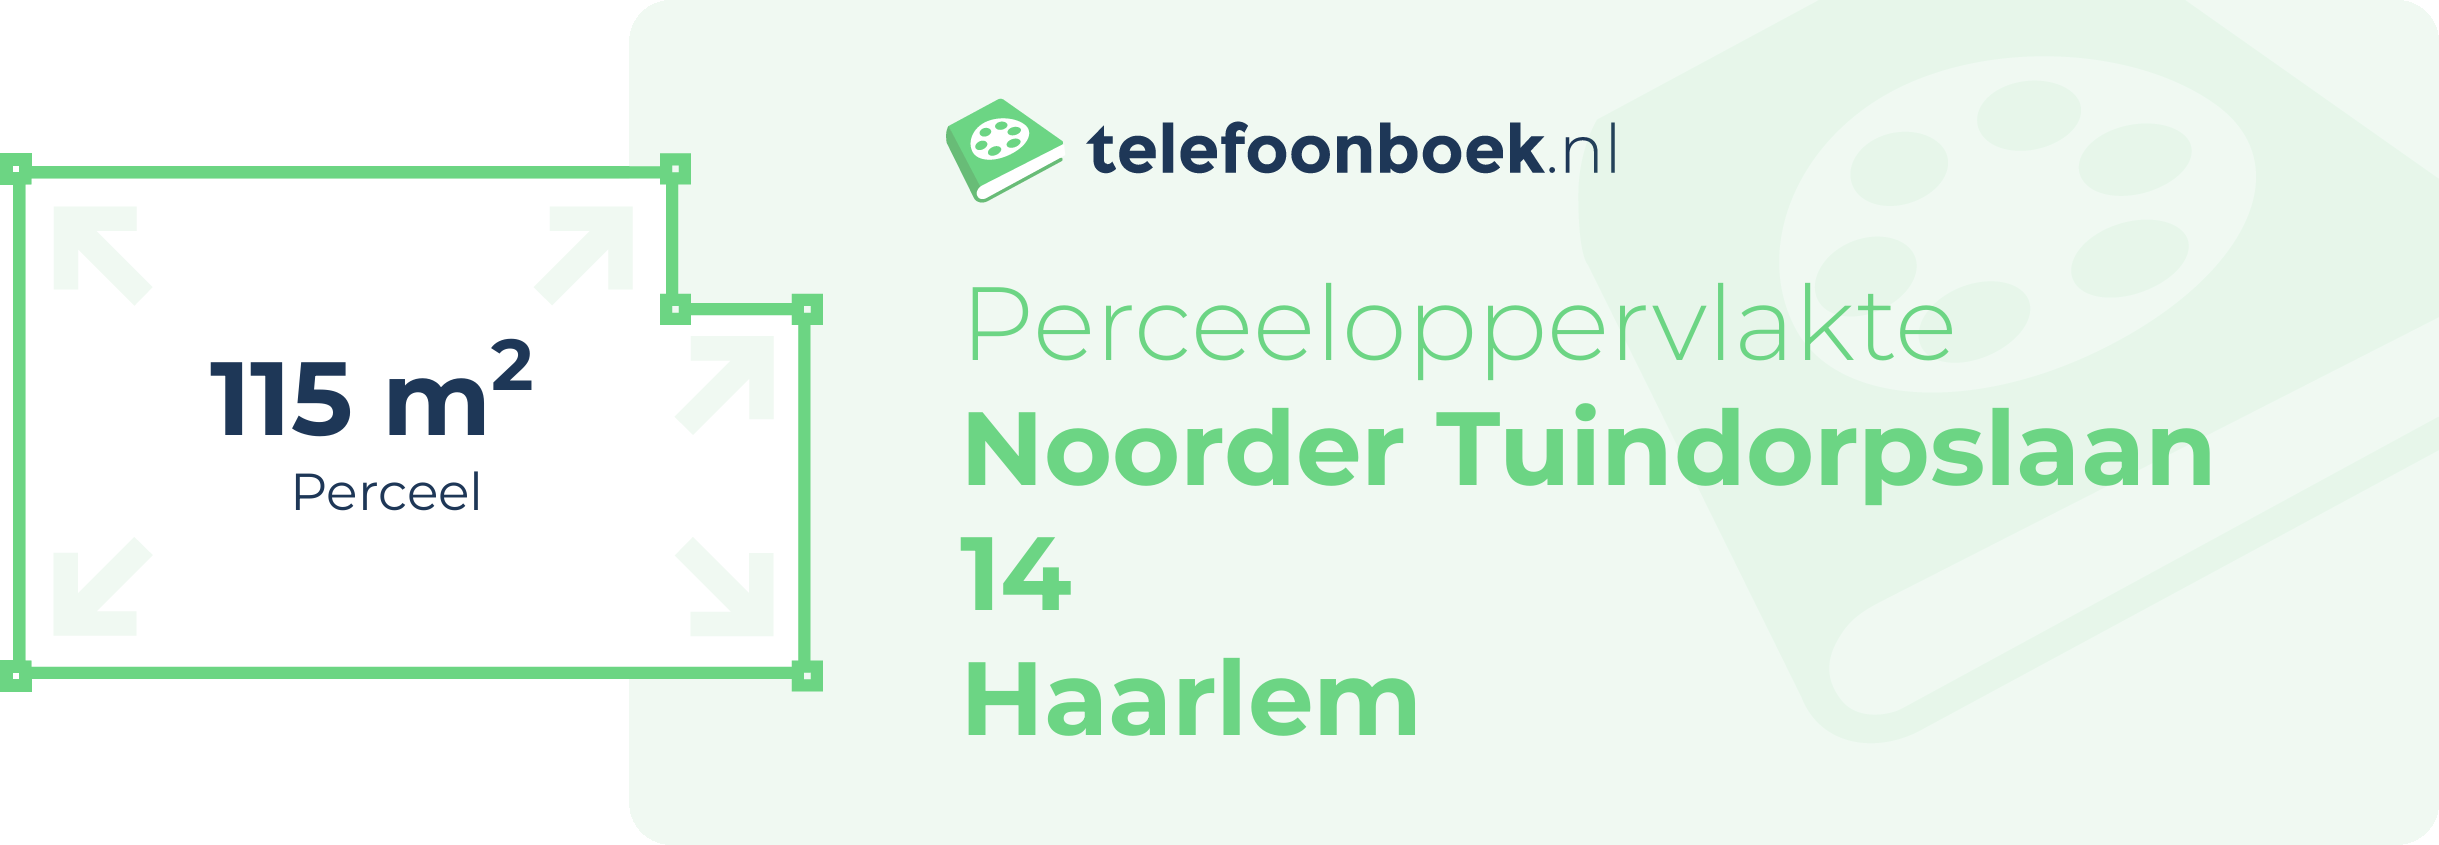 Perceeloppervlakte Noorder Tuindorpslaan 14 Haarlem